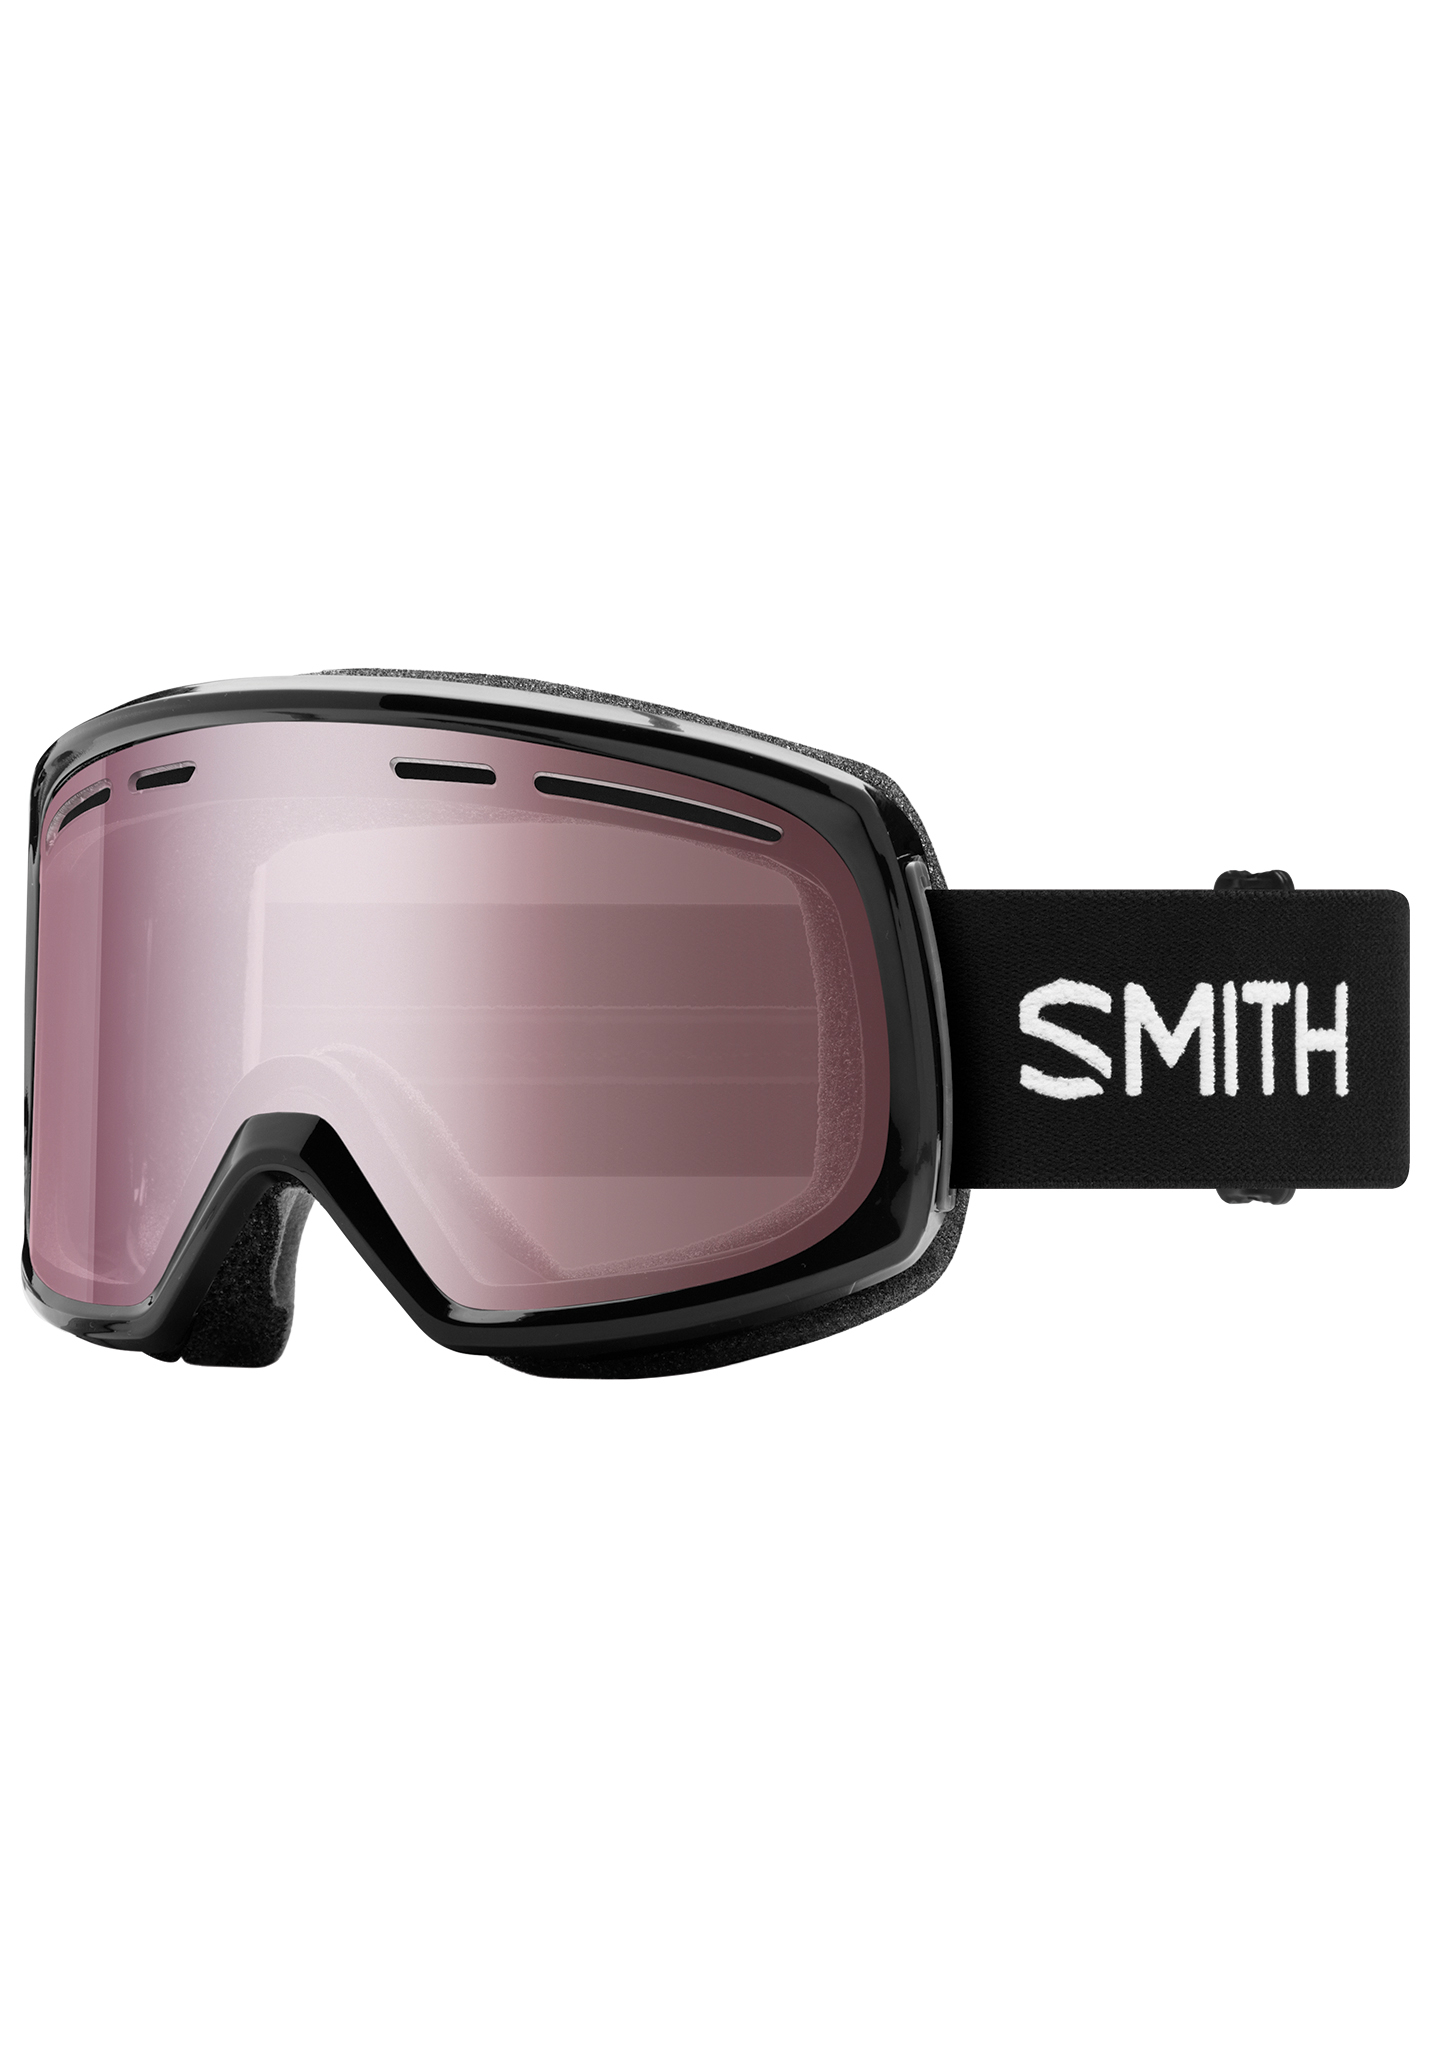 Smith Range Snowboardbrillen schwarz/ignitorischer spiegel One Size